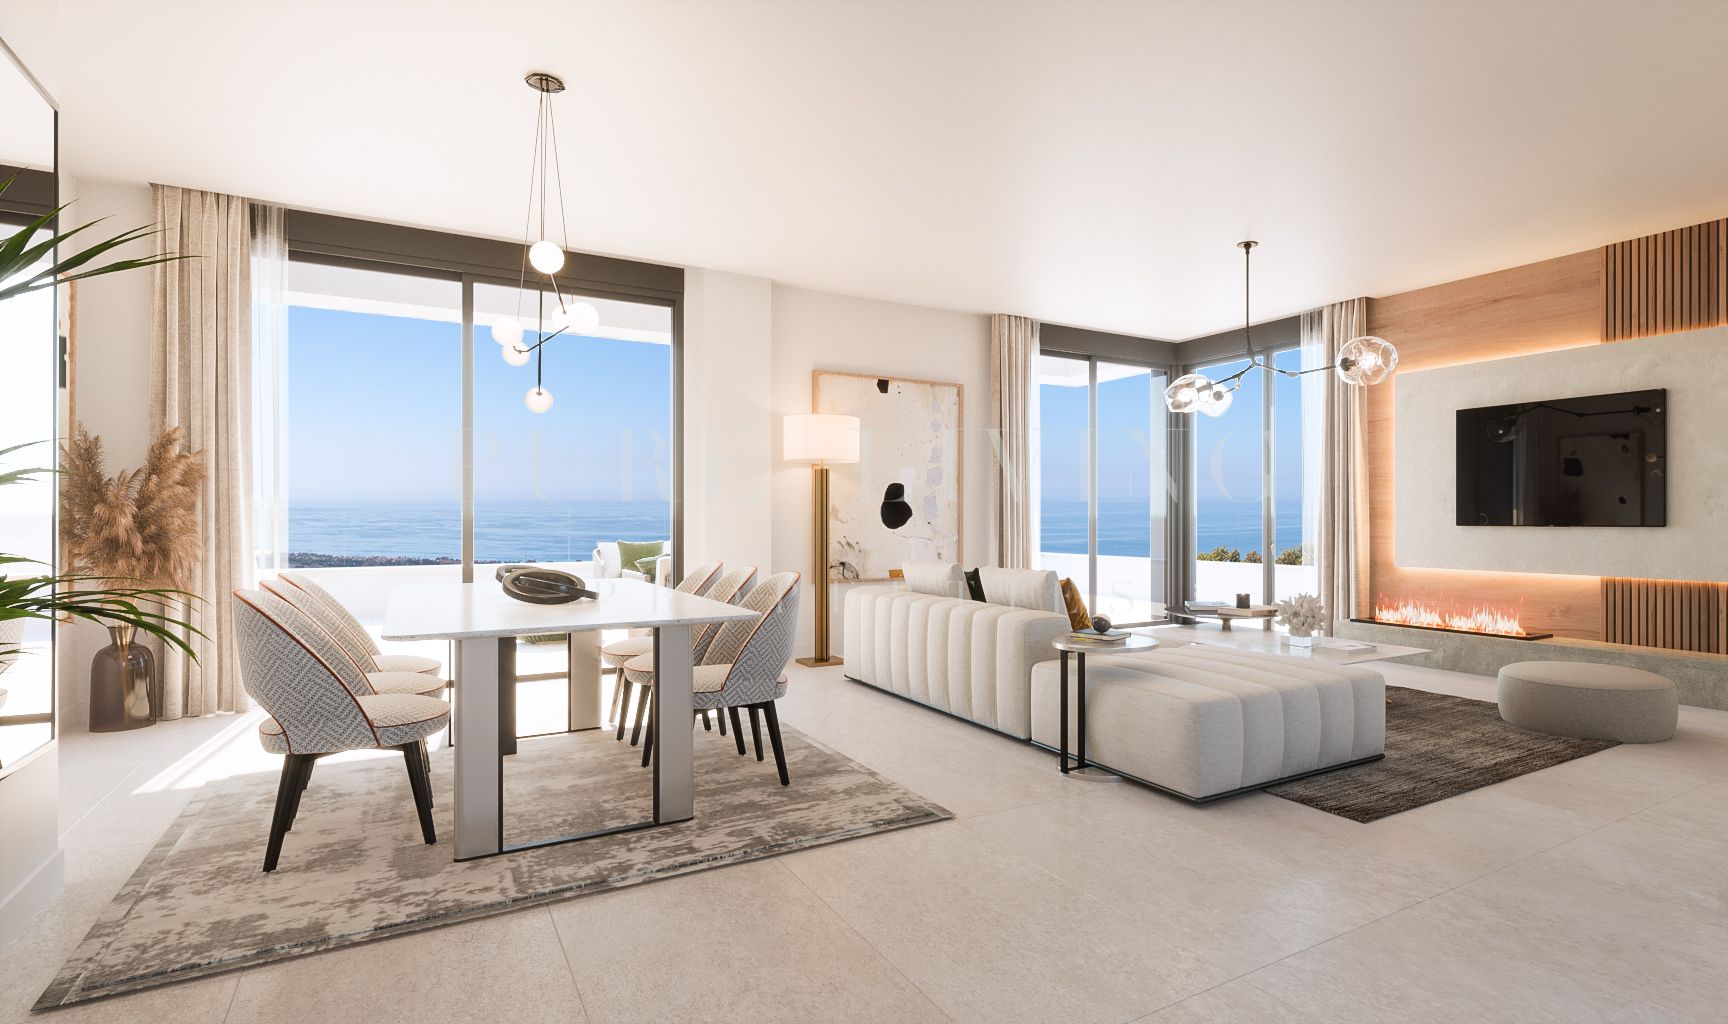 Appartement flambant neuf avec une superbe vue panoramique situé à Altos de Los Monteros.